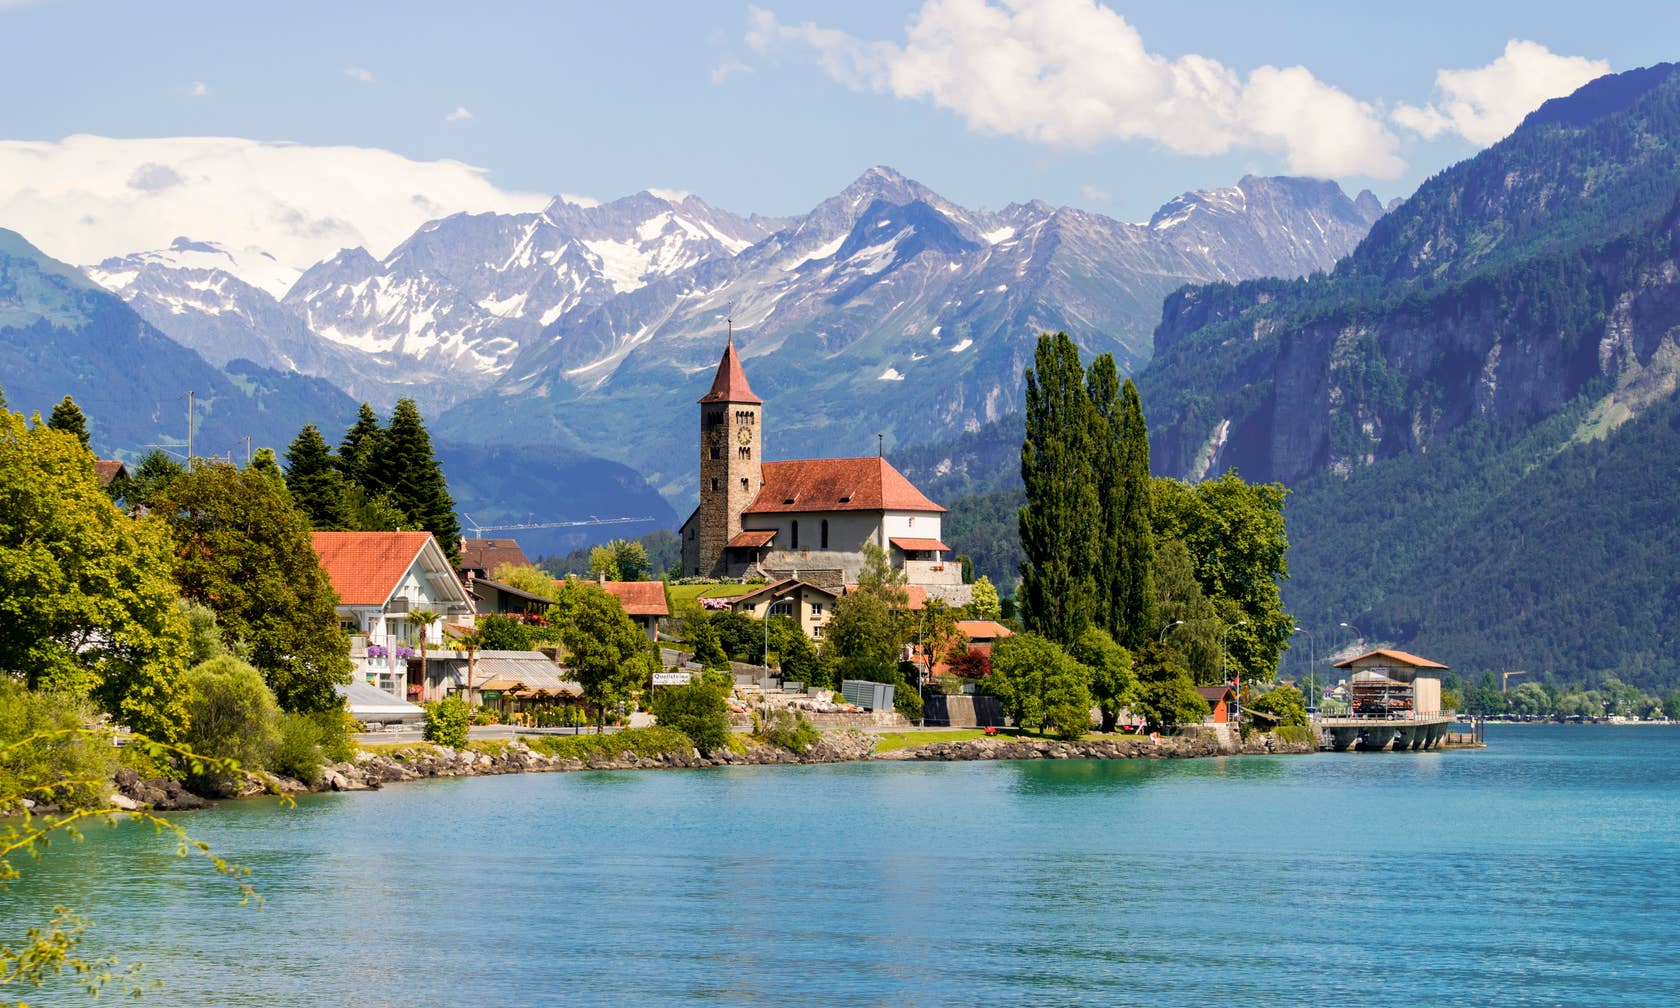 Smještaji za odmor na lokaciji: Švicarska